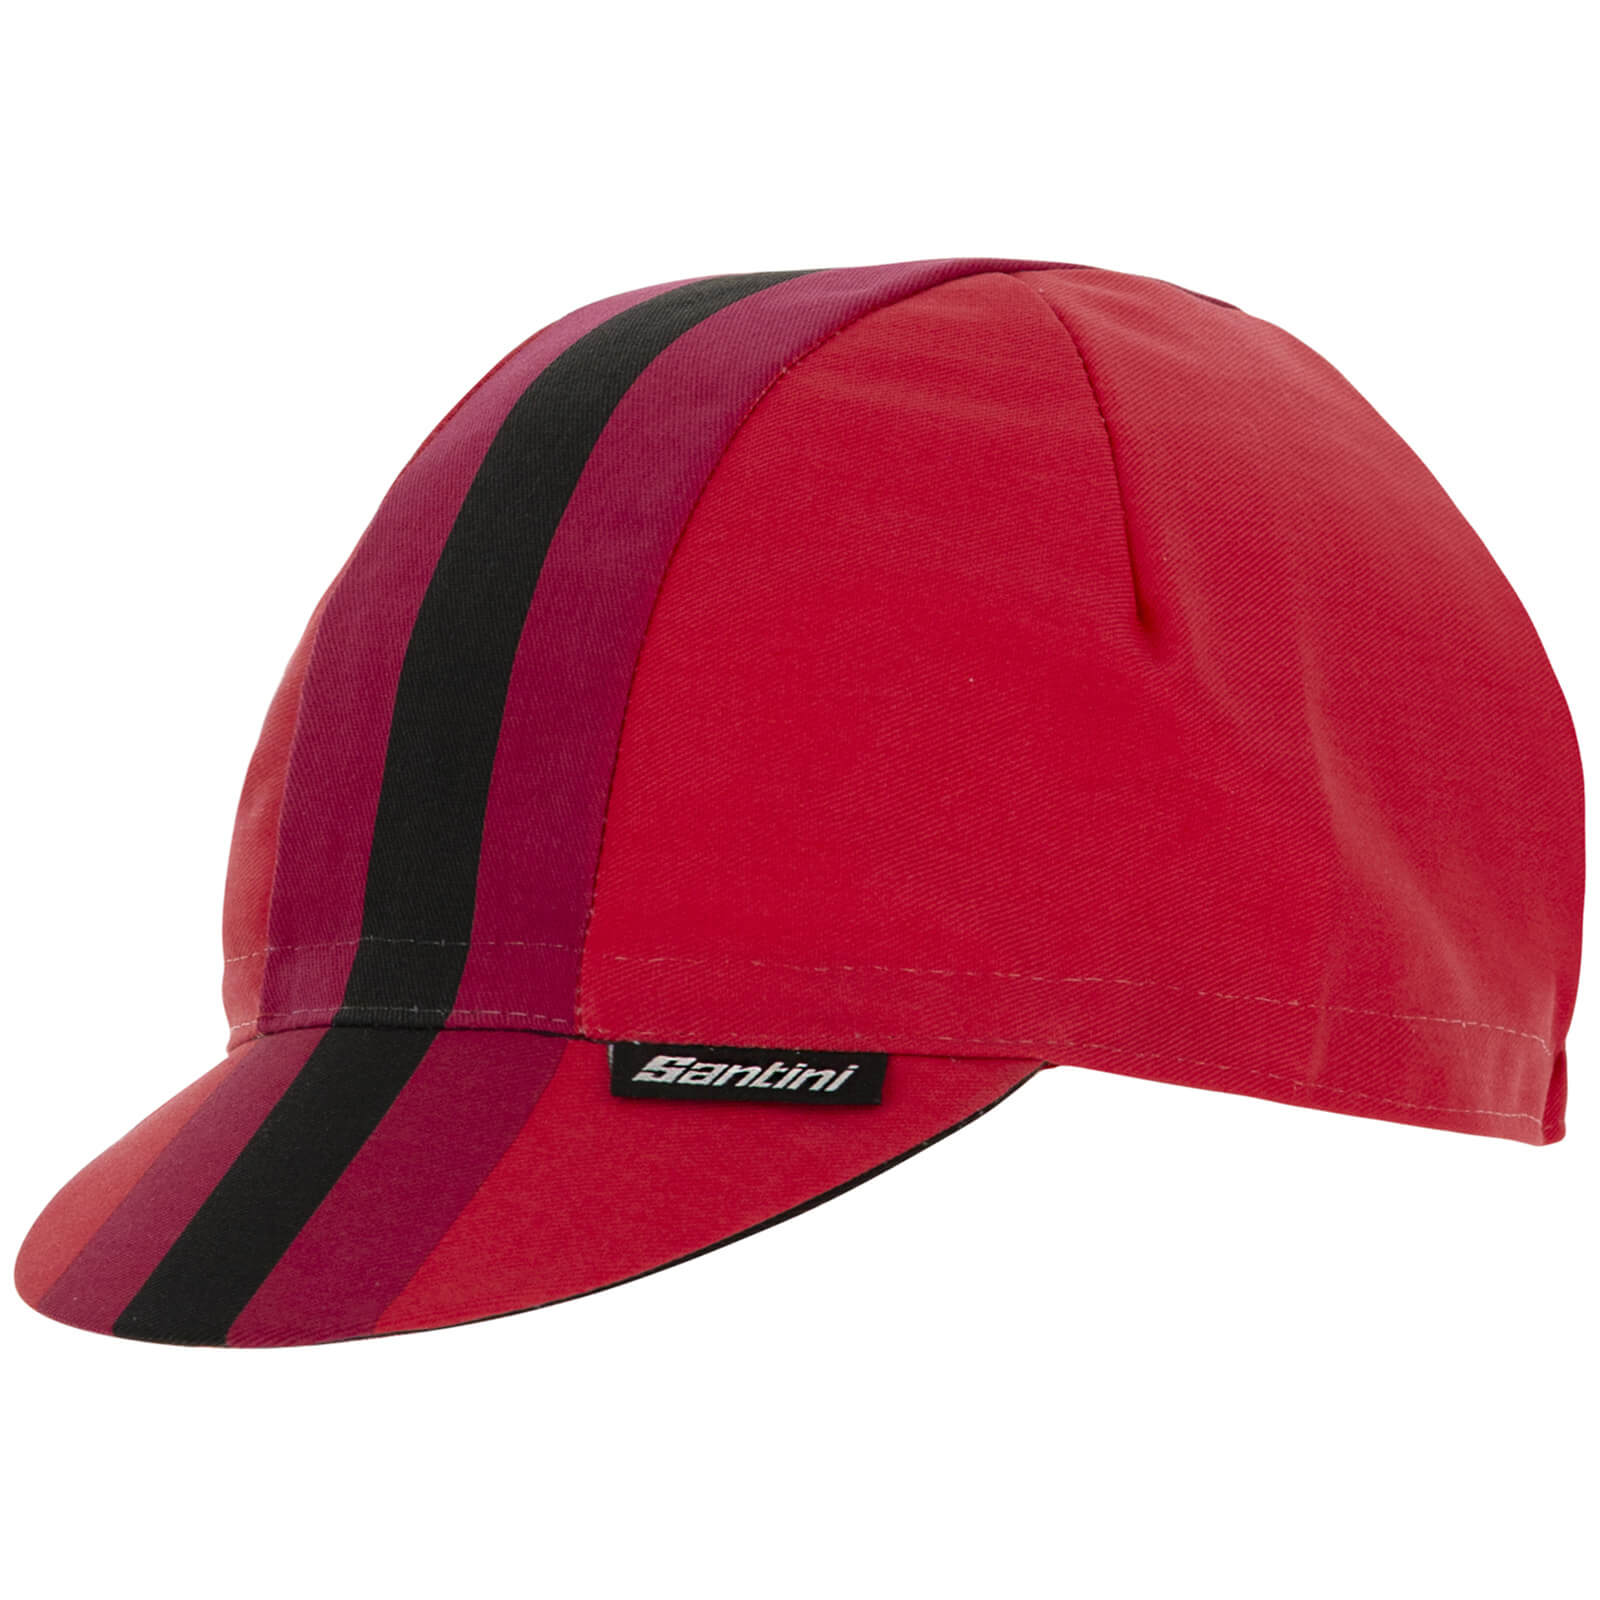 Santini Bengal Cotton Cap - Red